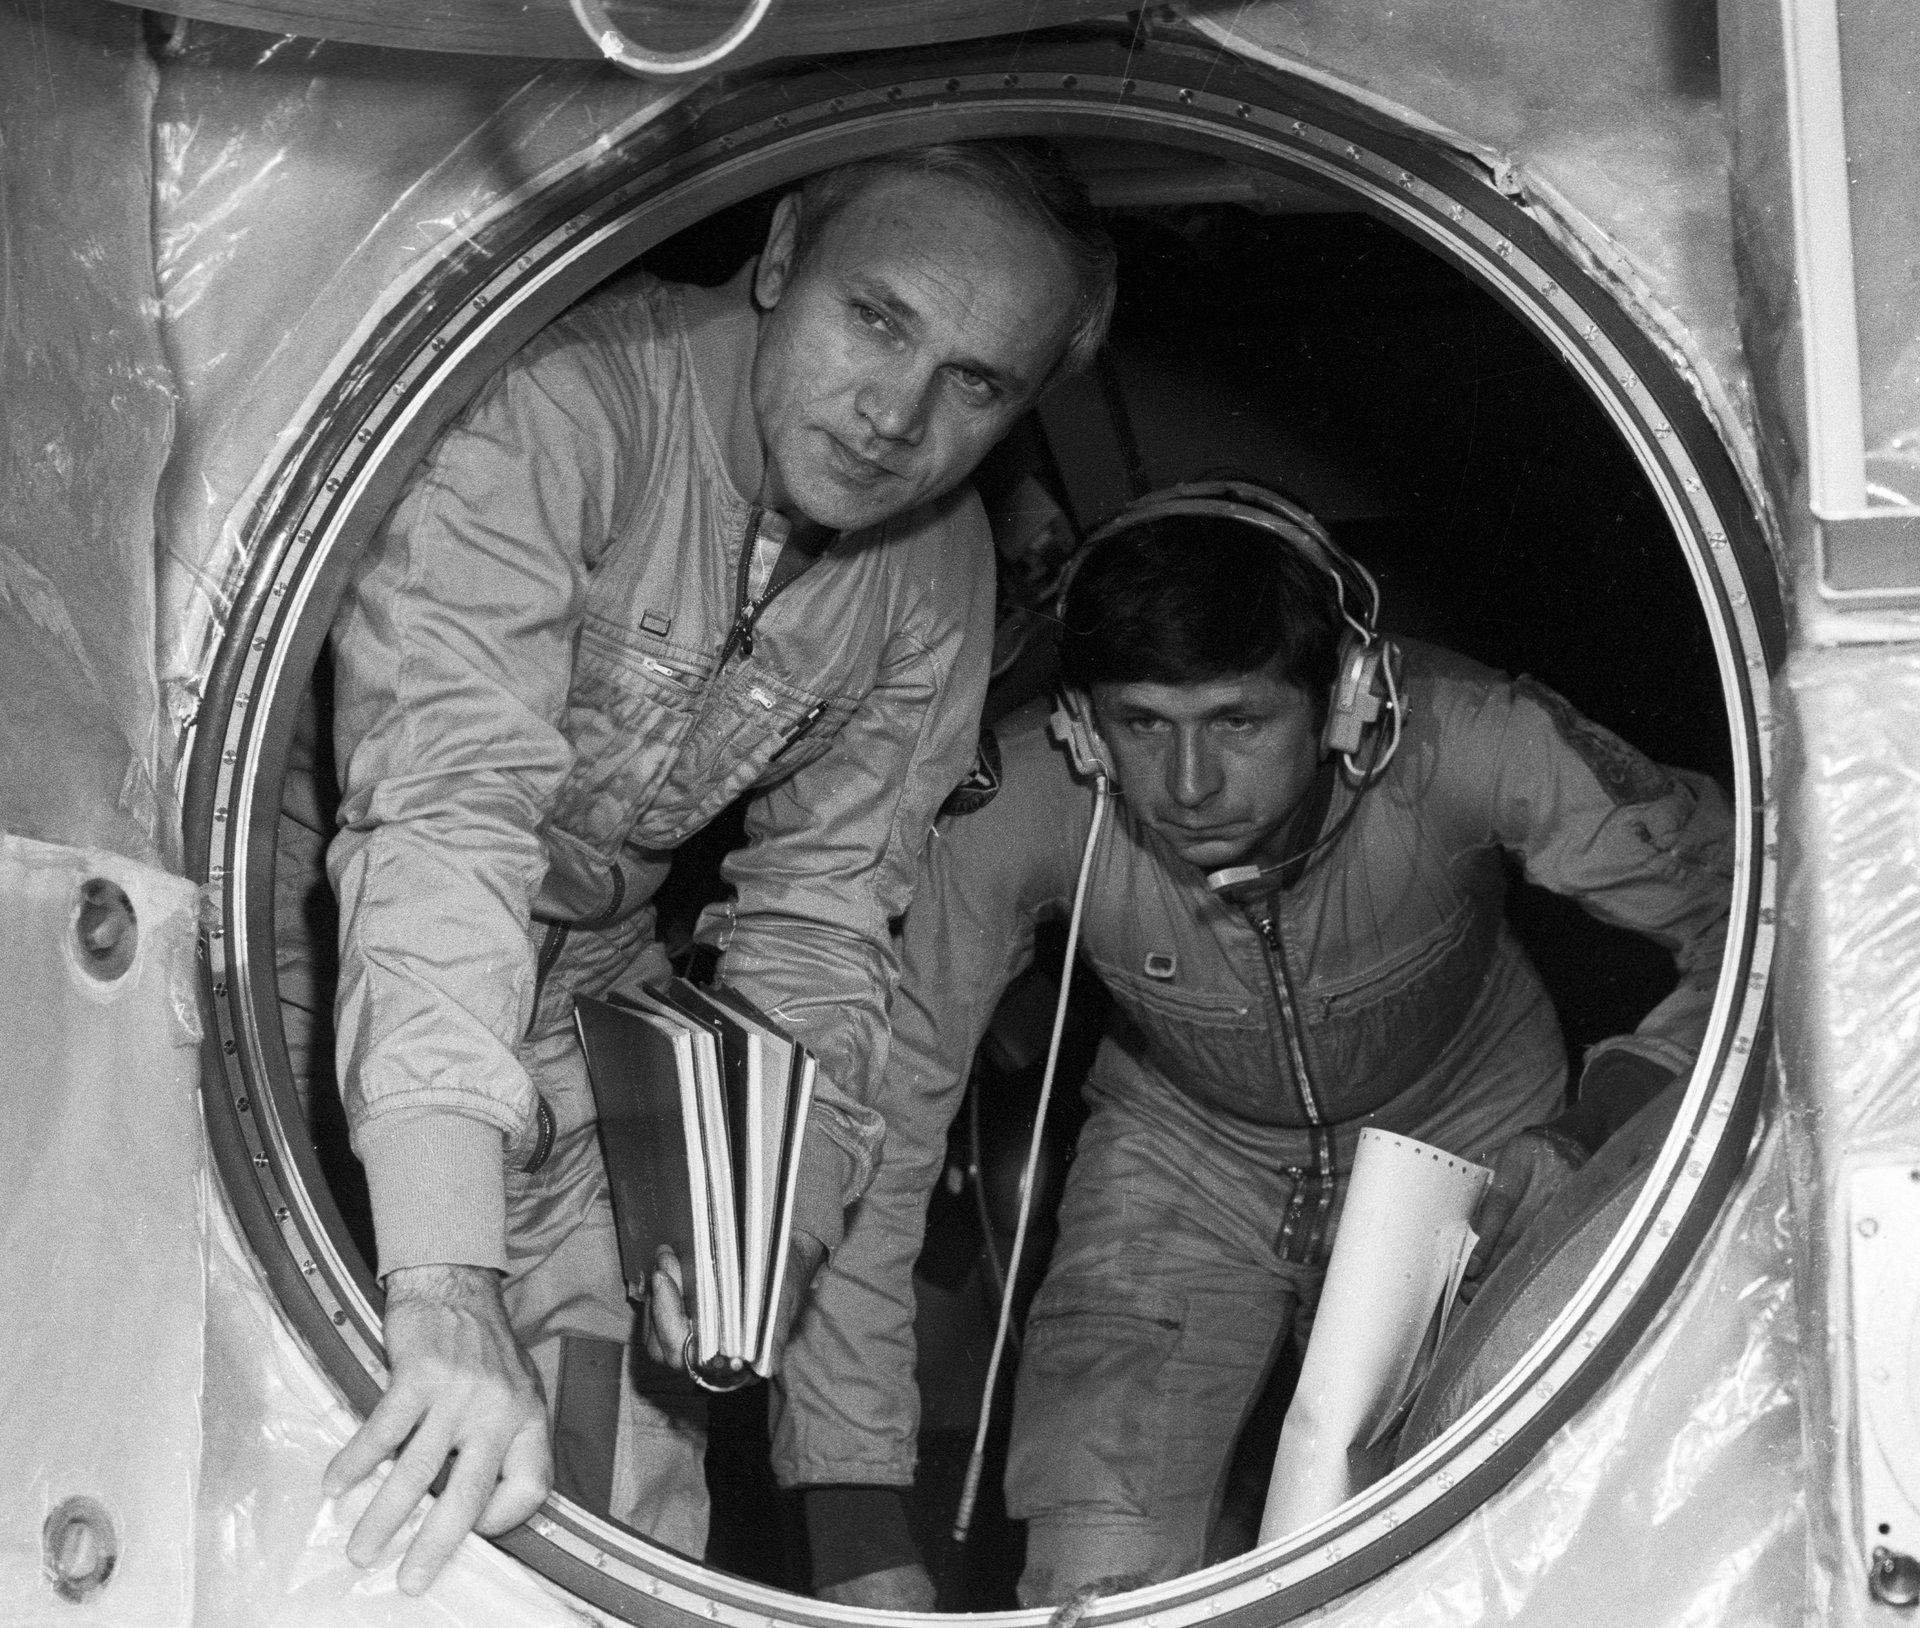 Космонавты советского времени